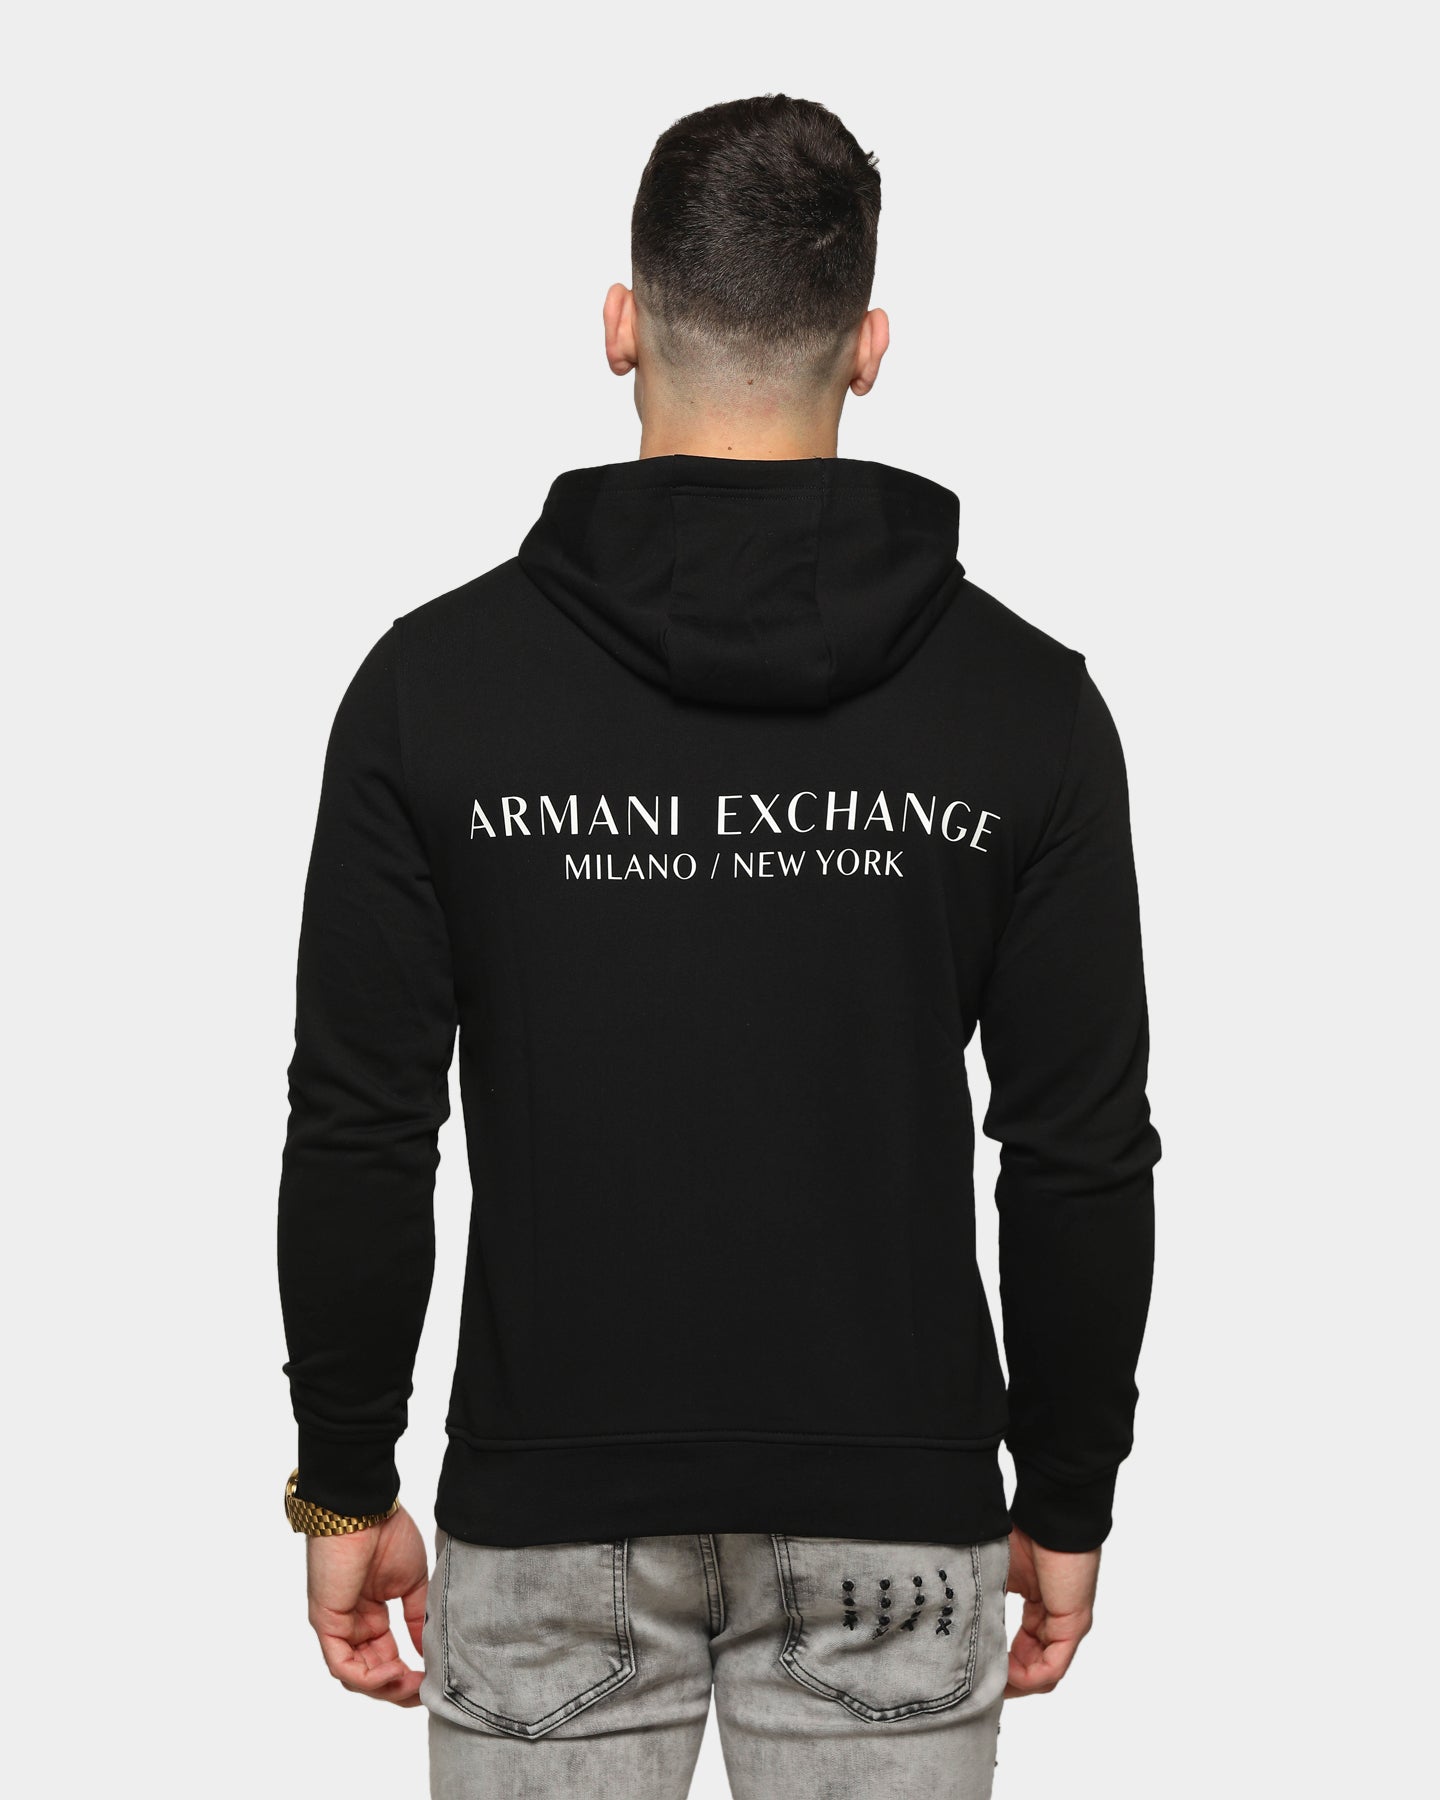 armani exchange sweatshirt mens